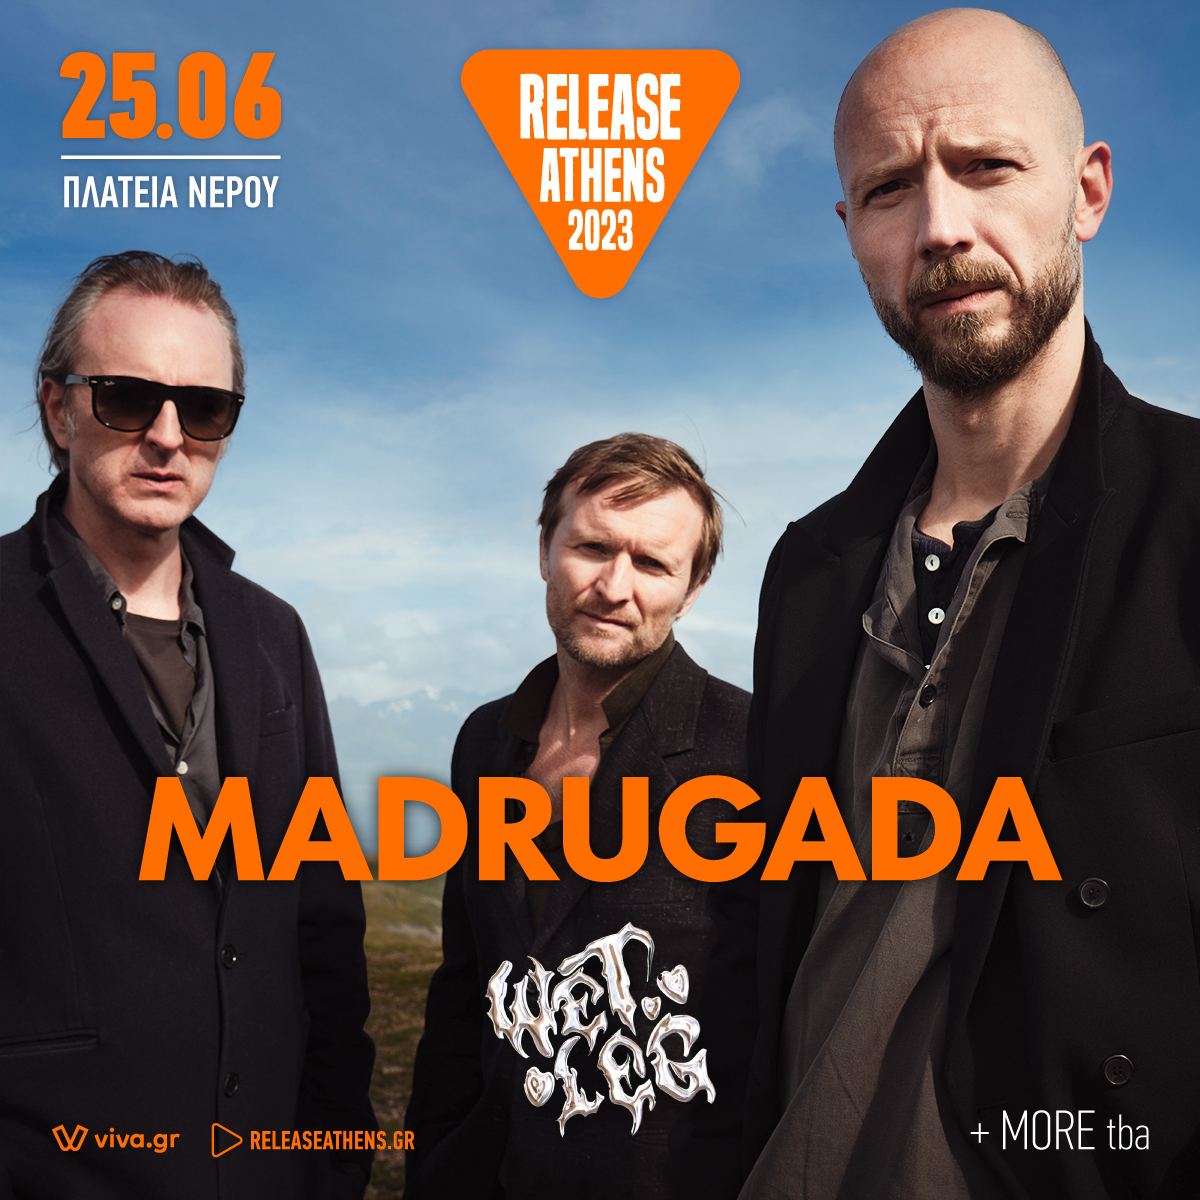 Madrugada Release 2023